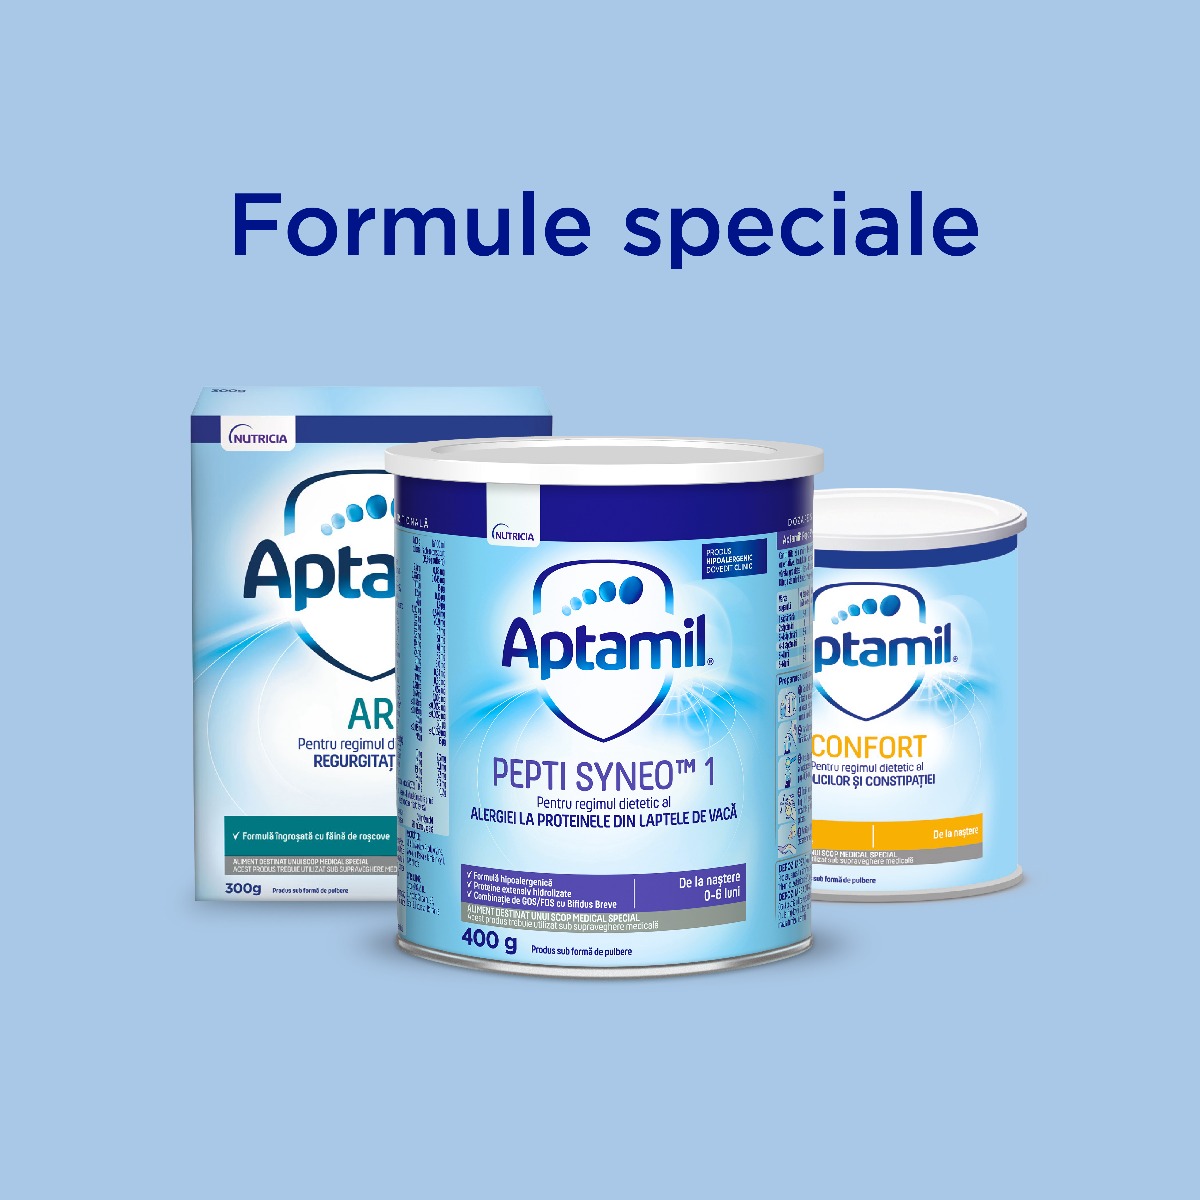 Aptamil - Formule speciale